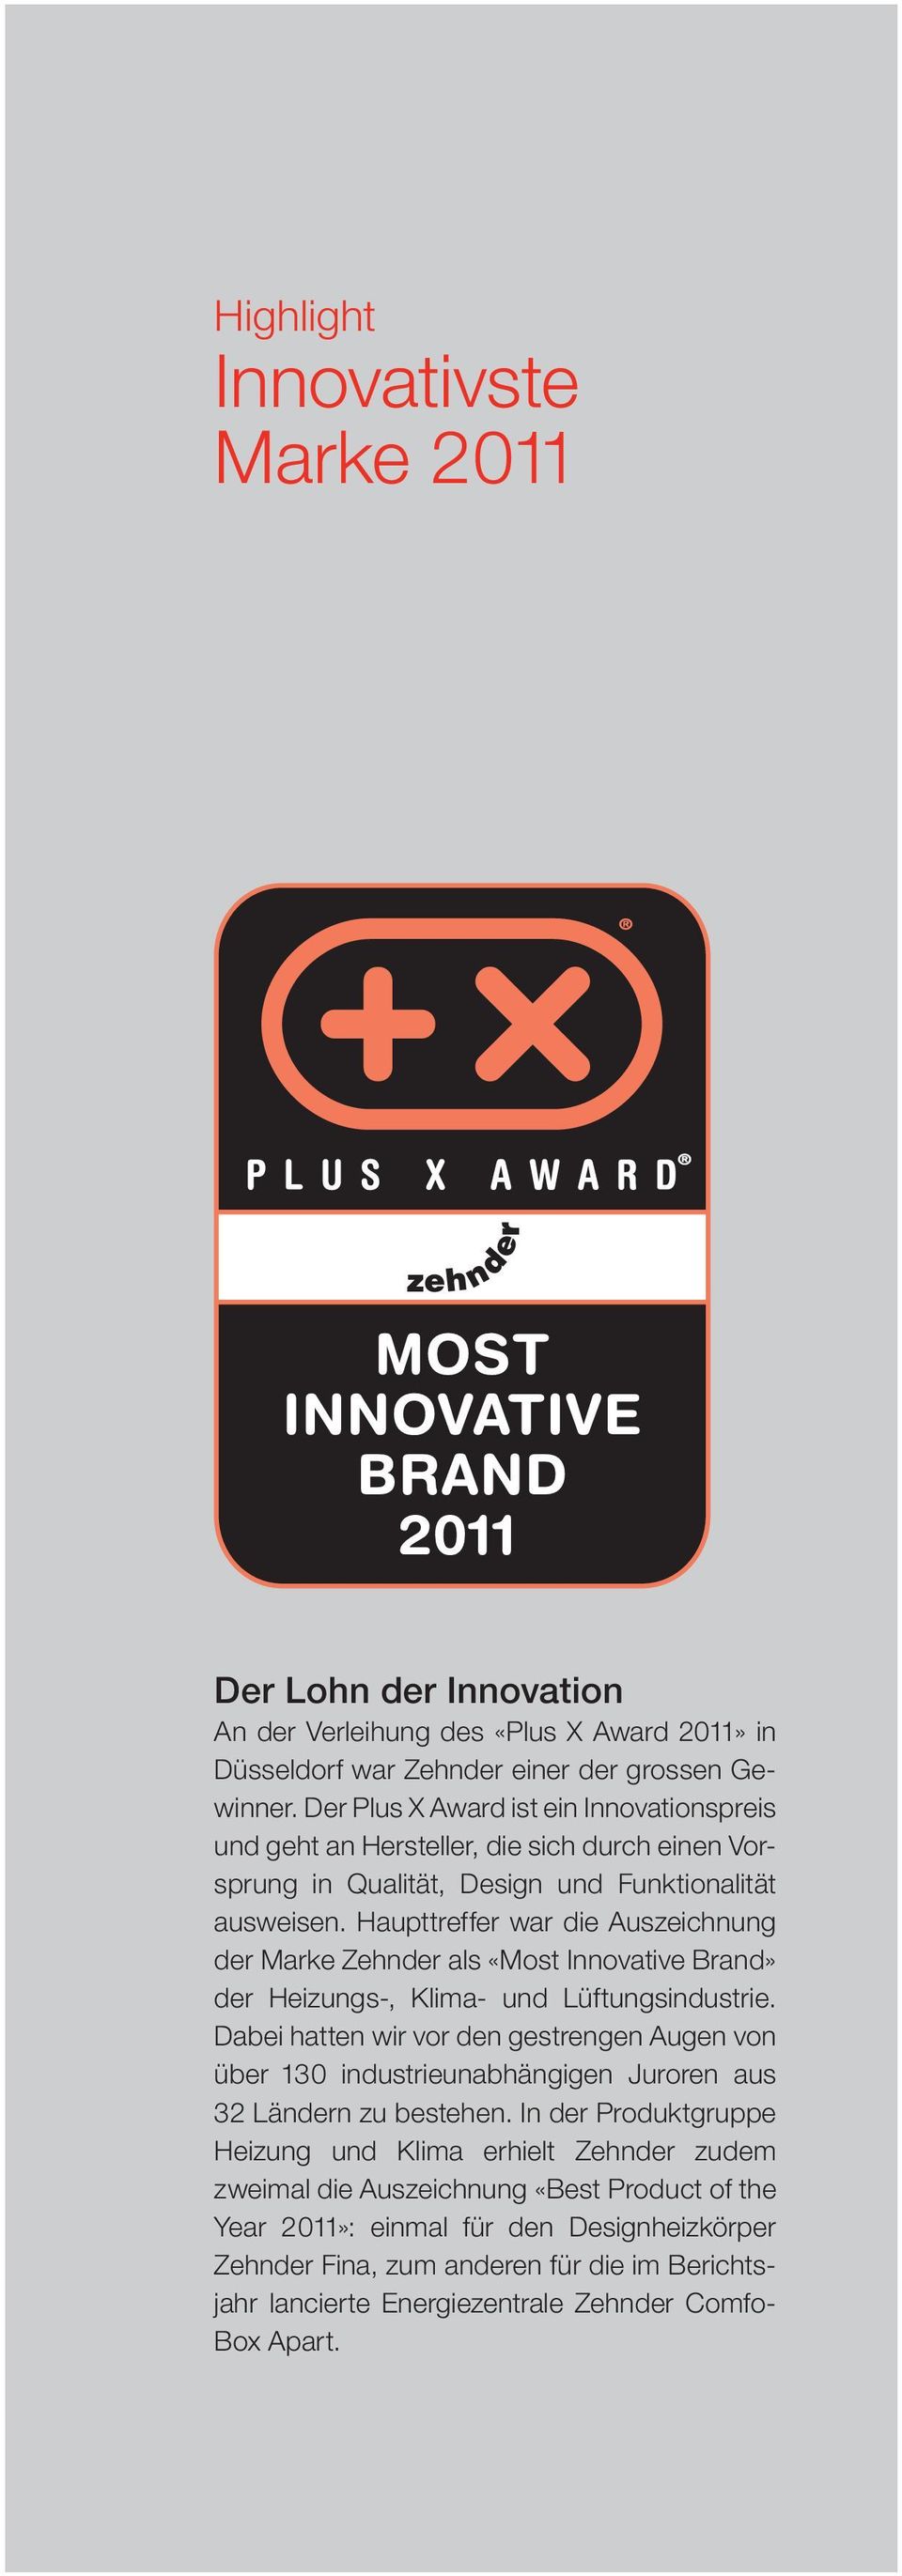 Haupttreffer war die Auszeichnung der Marke Zehnder als «Most In novative Brand» der Heizungs-, Klima- und Lüf tungsindustrie.